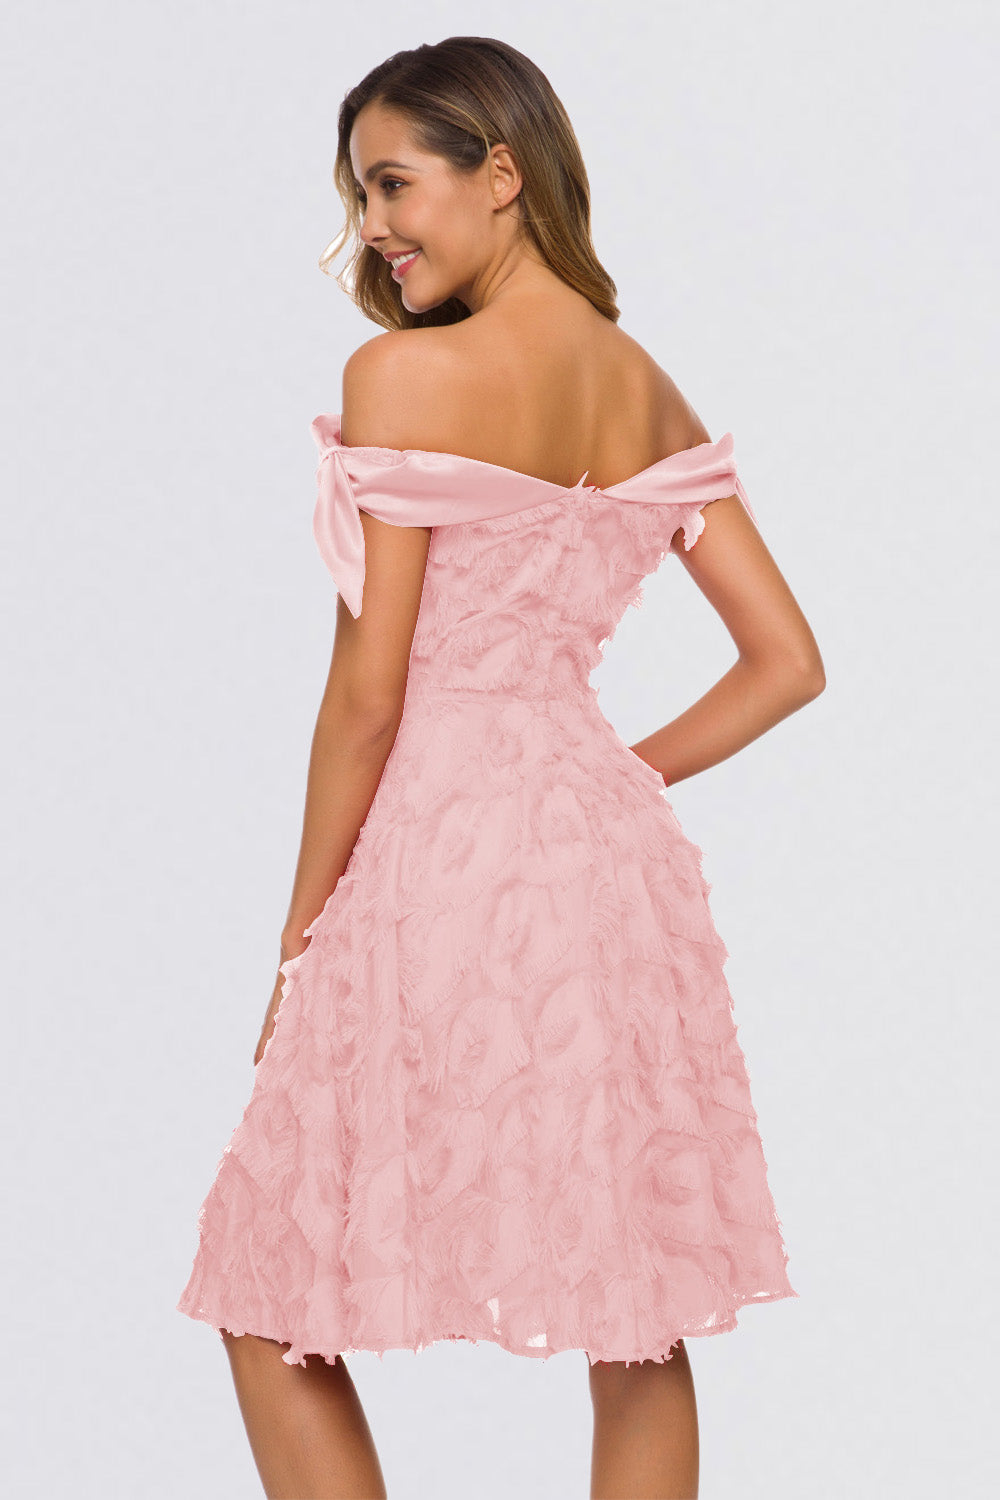 Tassel Elegant Off the Shoulder Homecoming Dresses